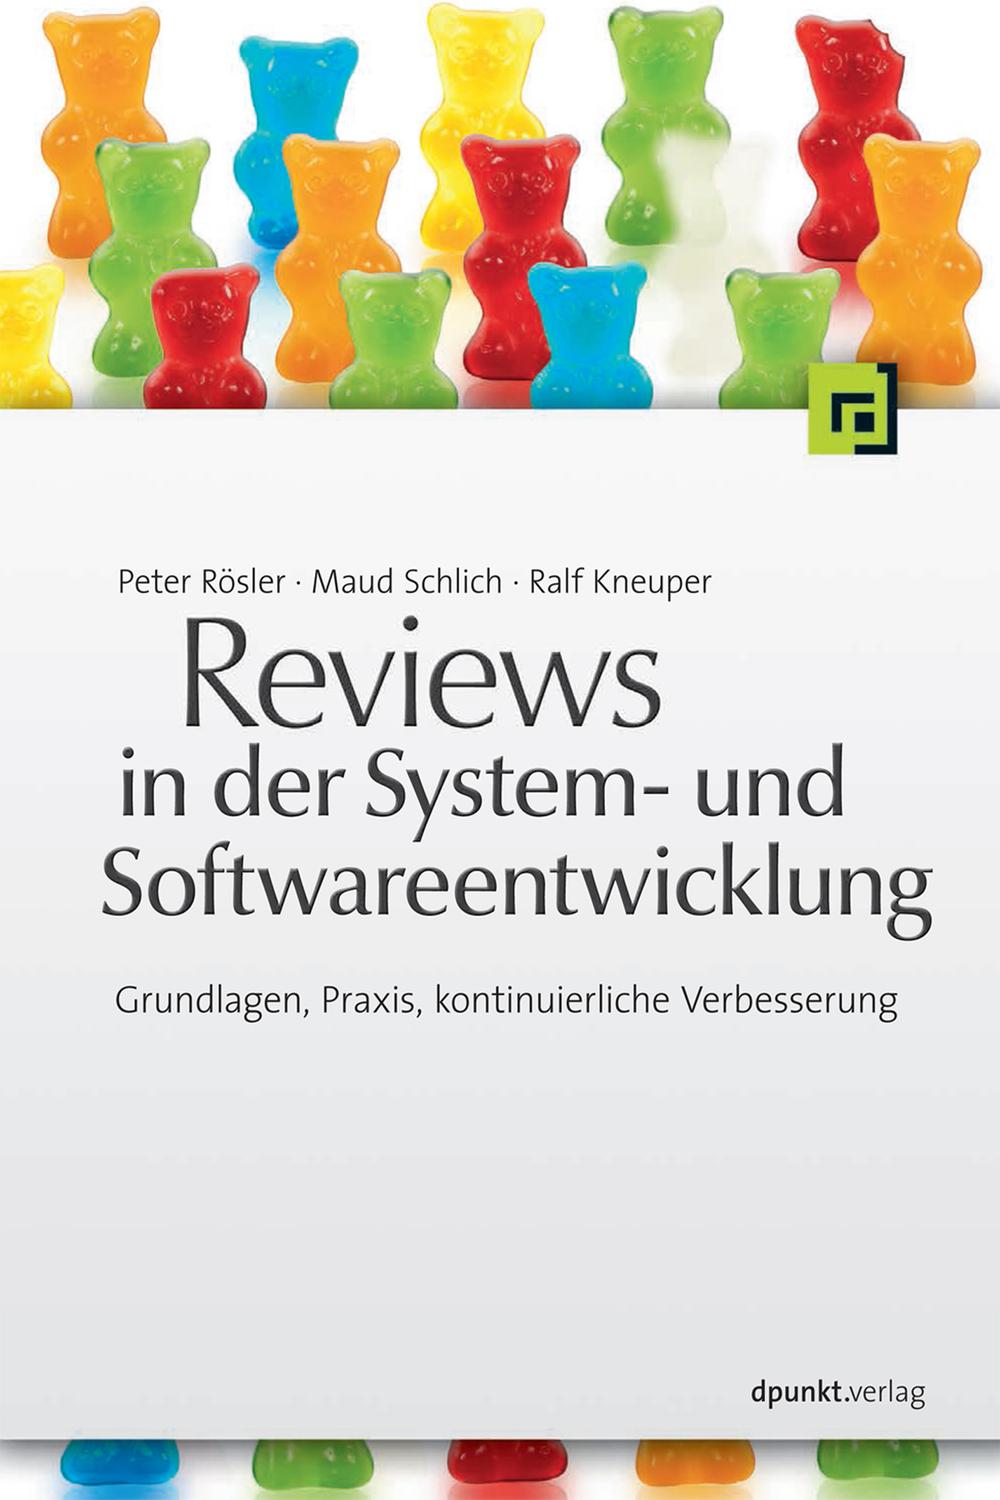 Reviews in der System- und Softwareentwicklung - Peter Rössler, Maud Schlich, Ralf Kneuper